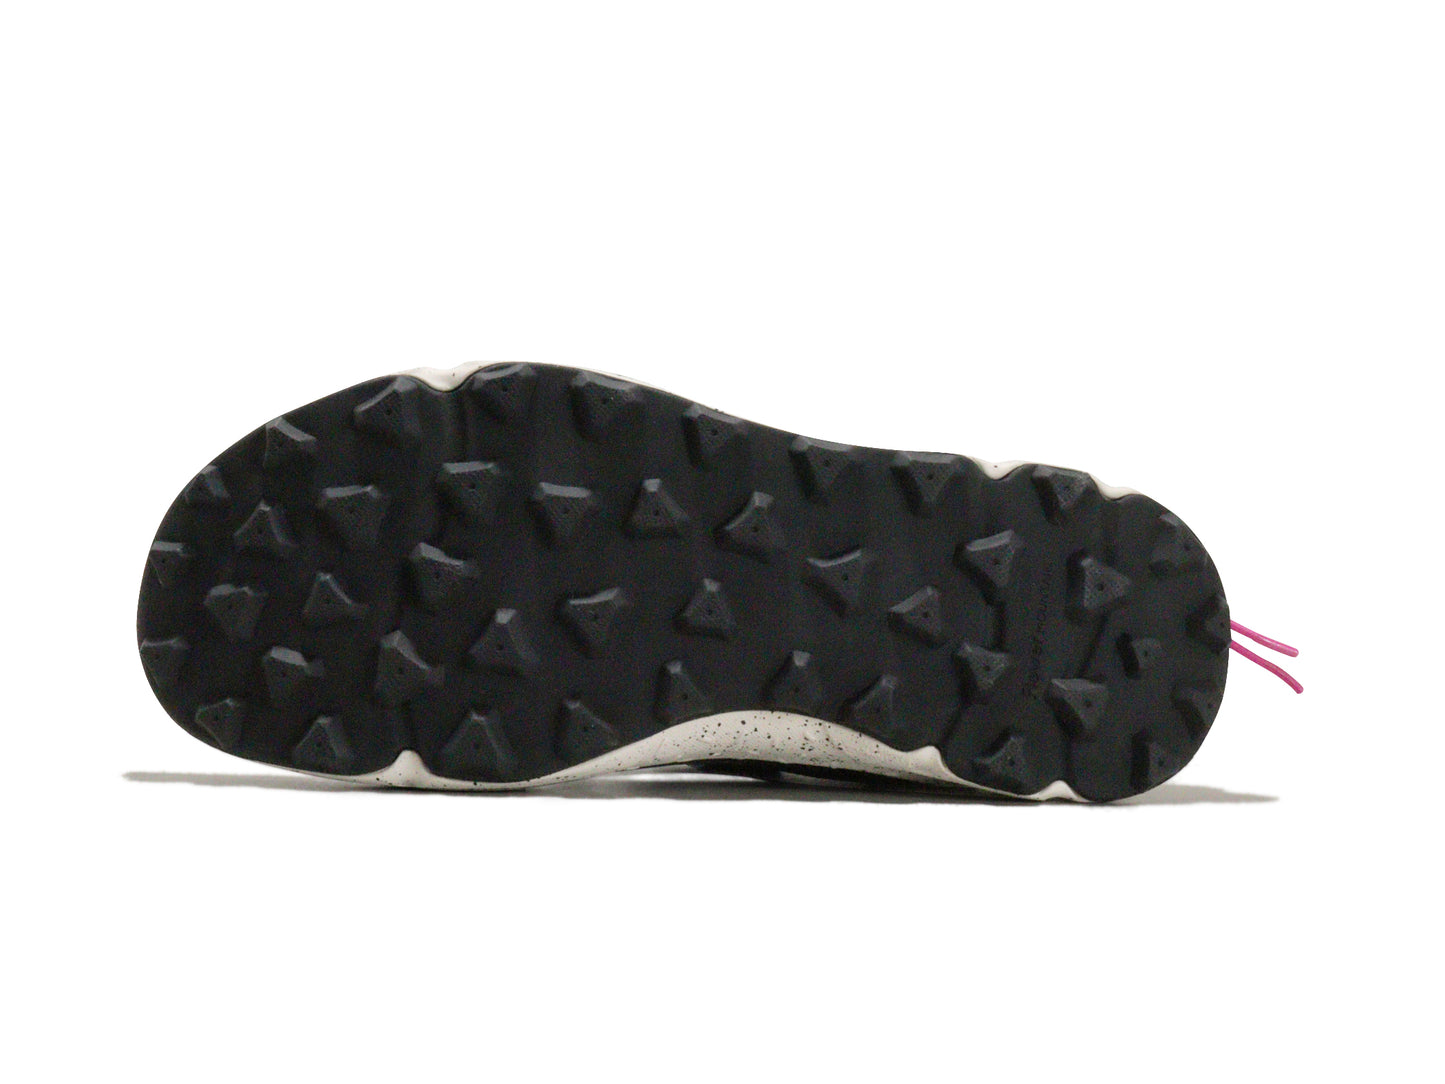 Flower MOUNTAINのサンダル「FM30015」の靴底の商品画像